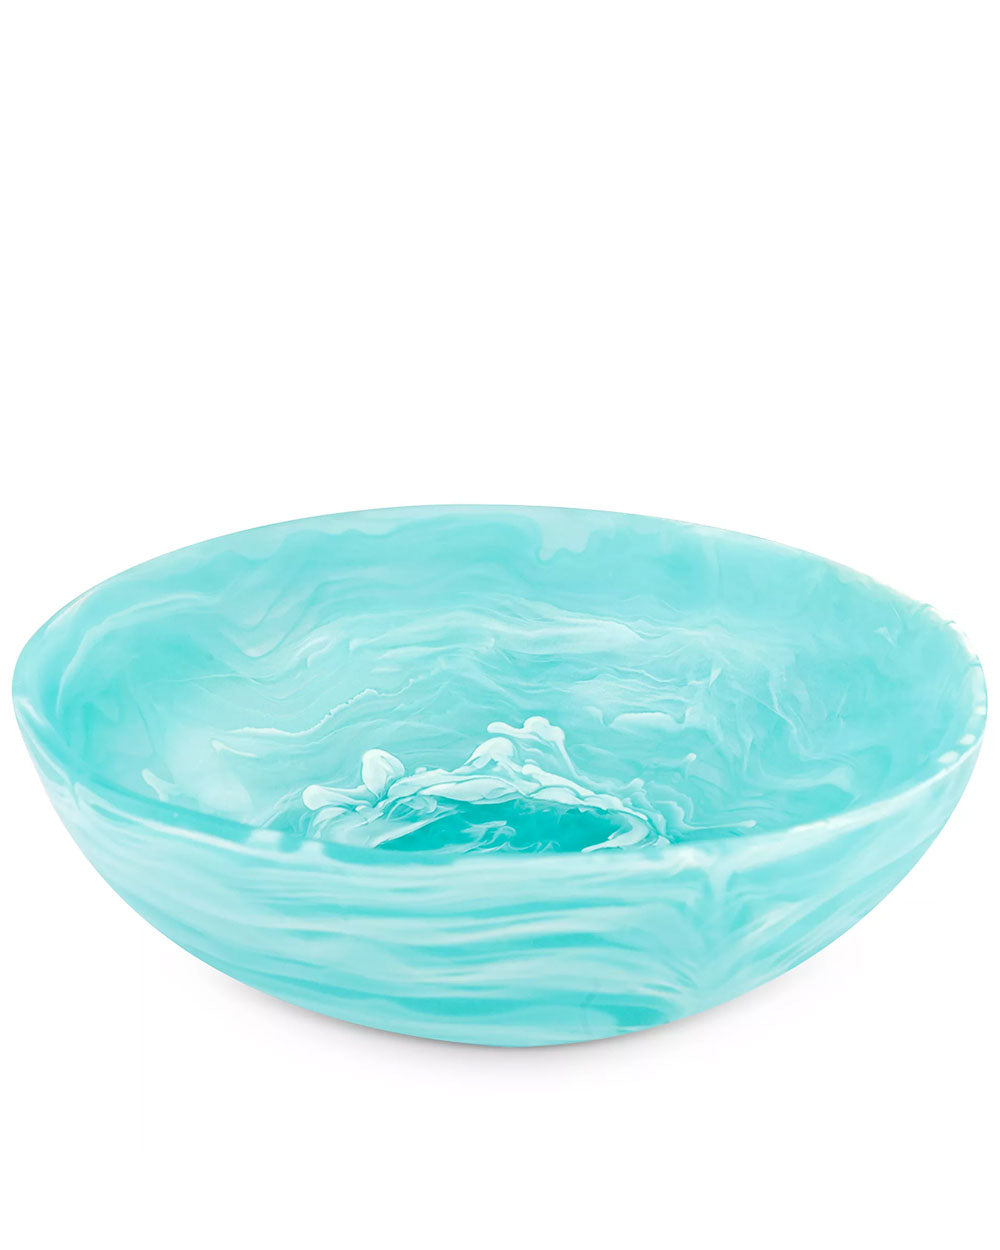 Medium Wave Bowl in Aqua